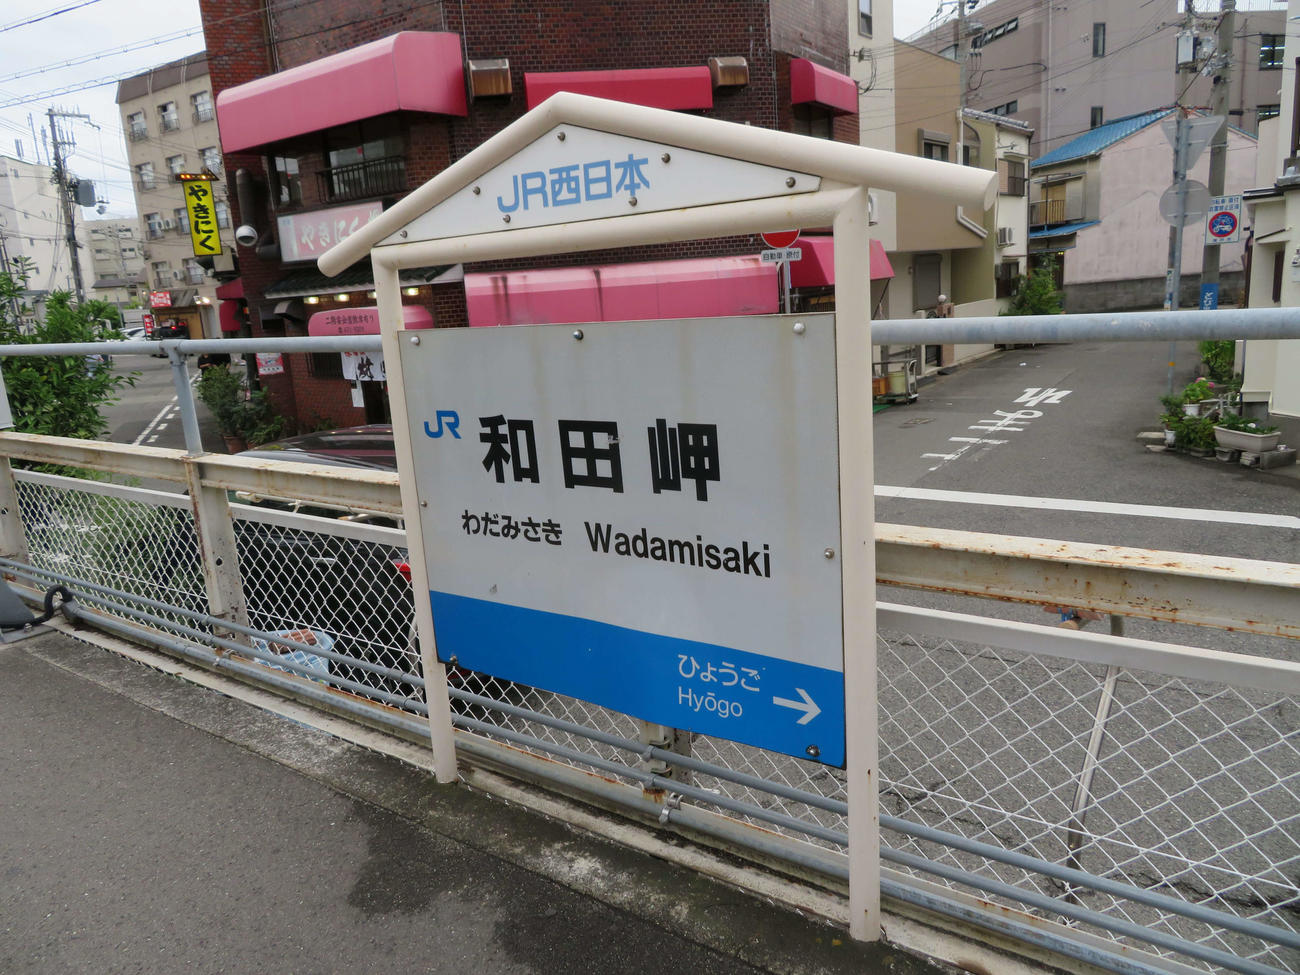 〈6〉和田岬駅の駅名標